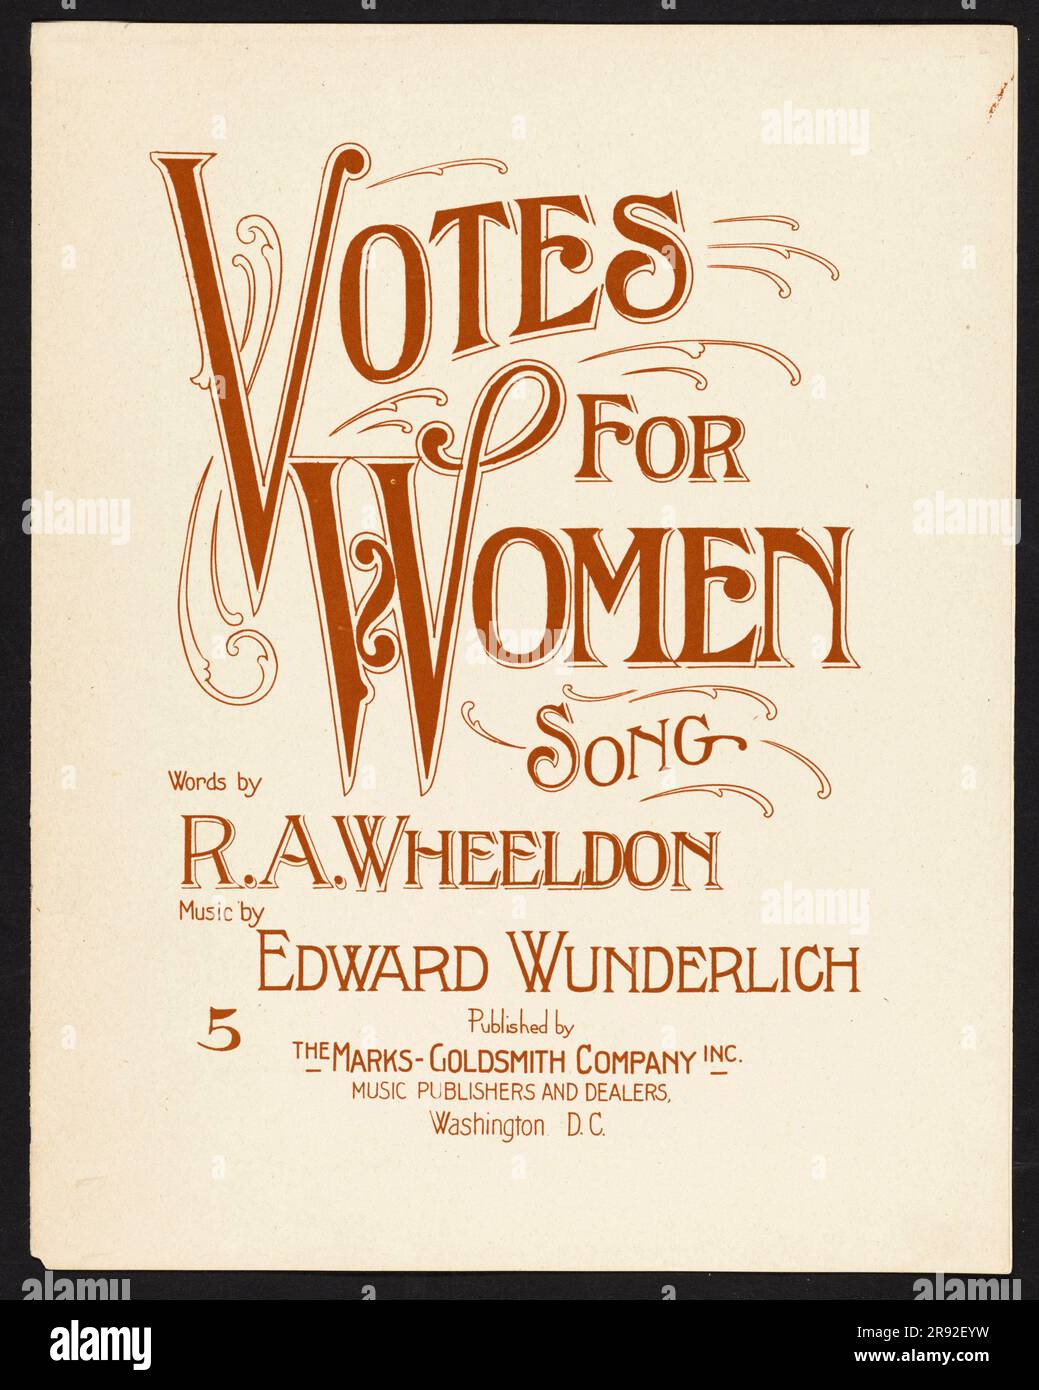 Notenblatt für einen Song von RA Wheeldon und Edward Wunderlich Stockfoto